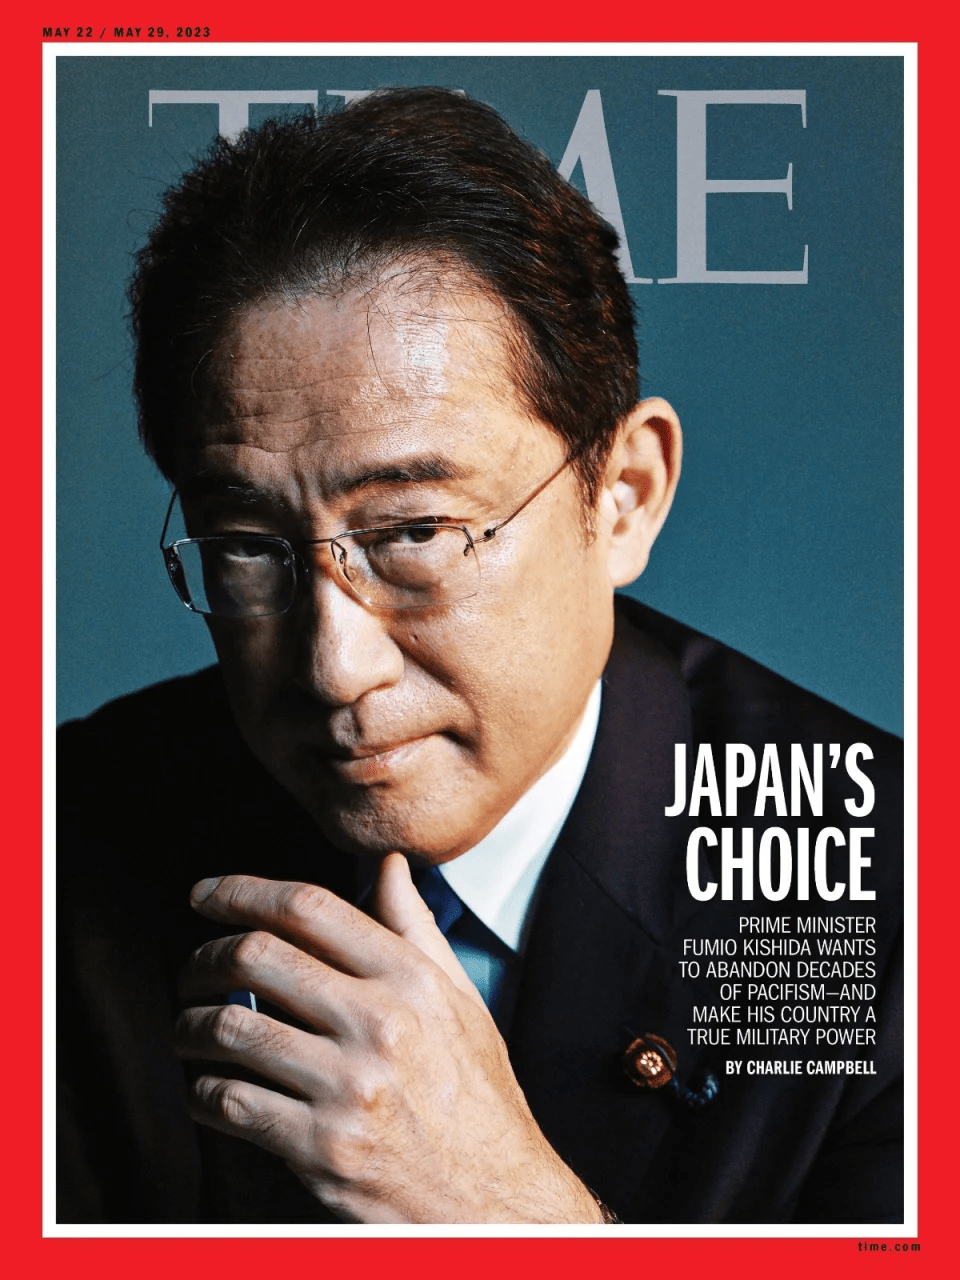 岸田将登上时代杂志5月号22至29日封面。twitter@time